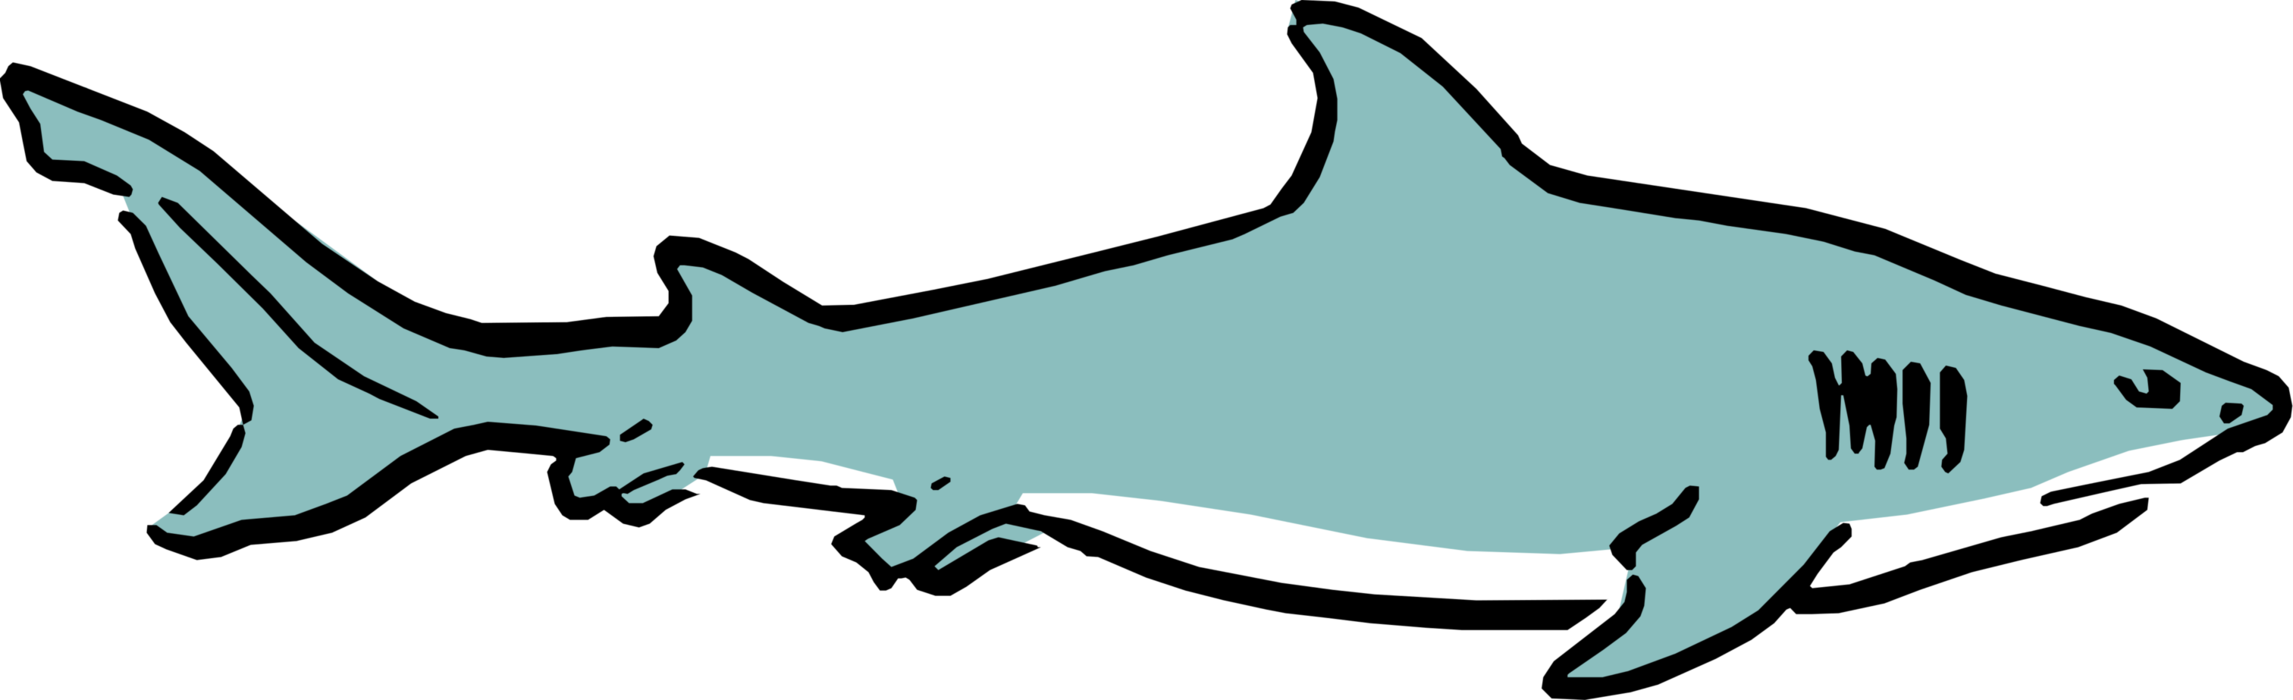 Vector Illustration of Cartoon Predator Marine Shark